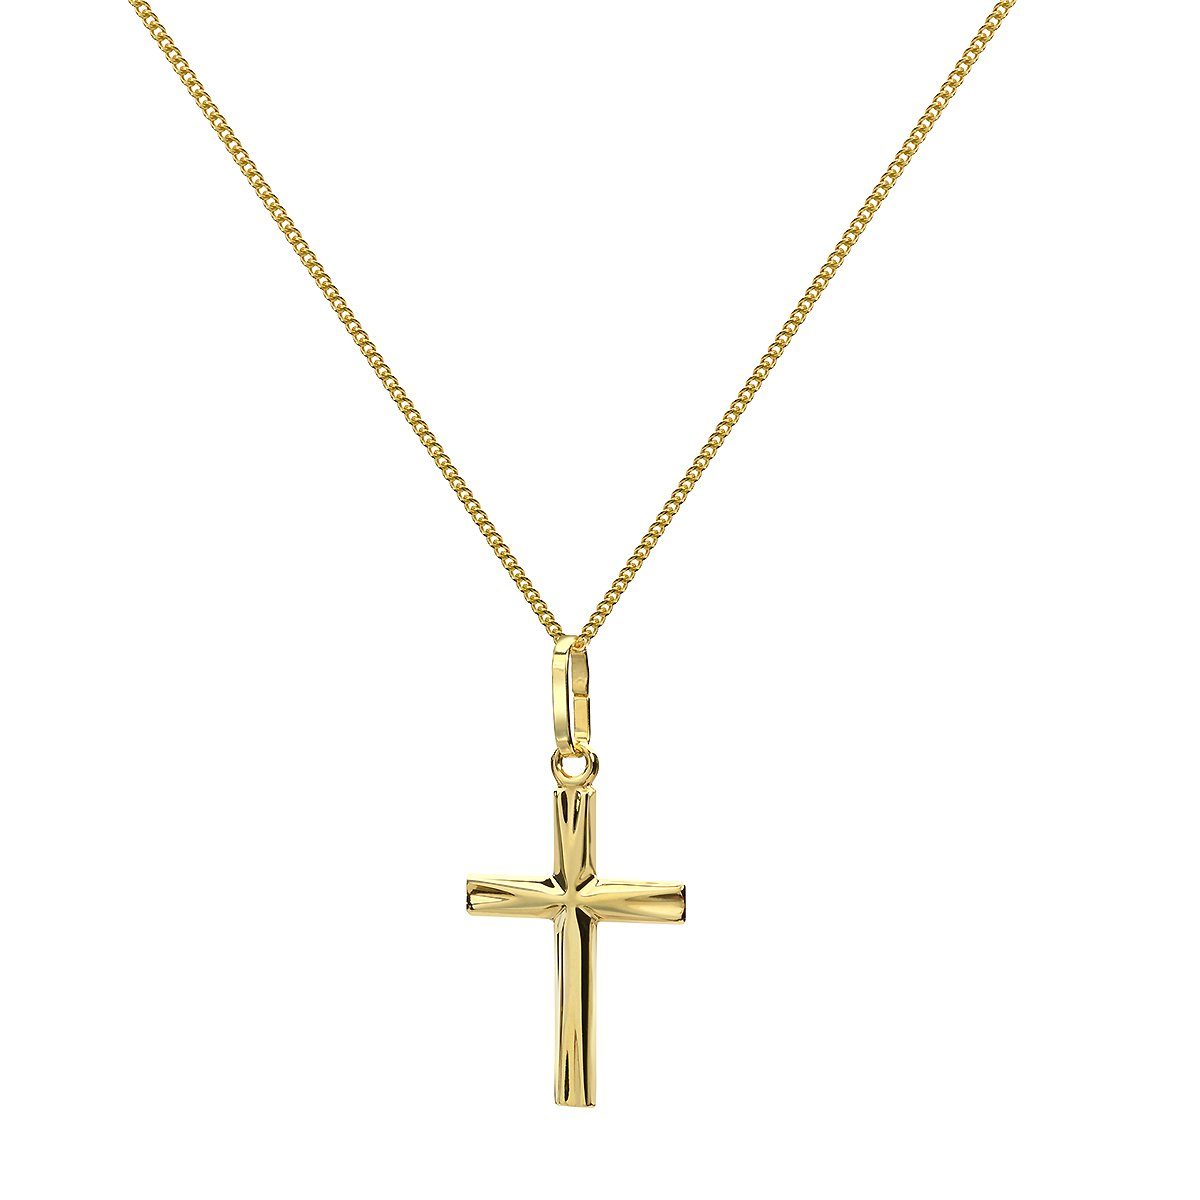 Materia mit Halskette Kreuz GKA-2, Anhänger Kreuzkette Echtgold aus 375